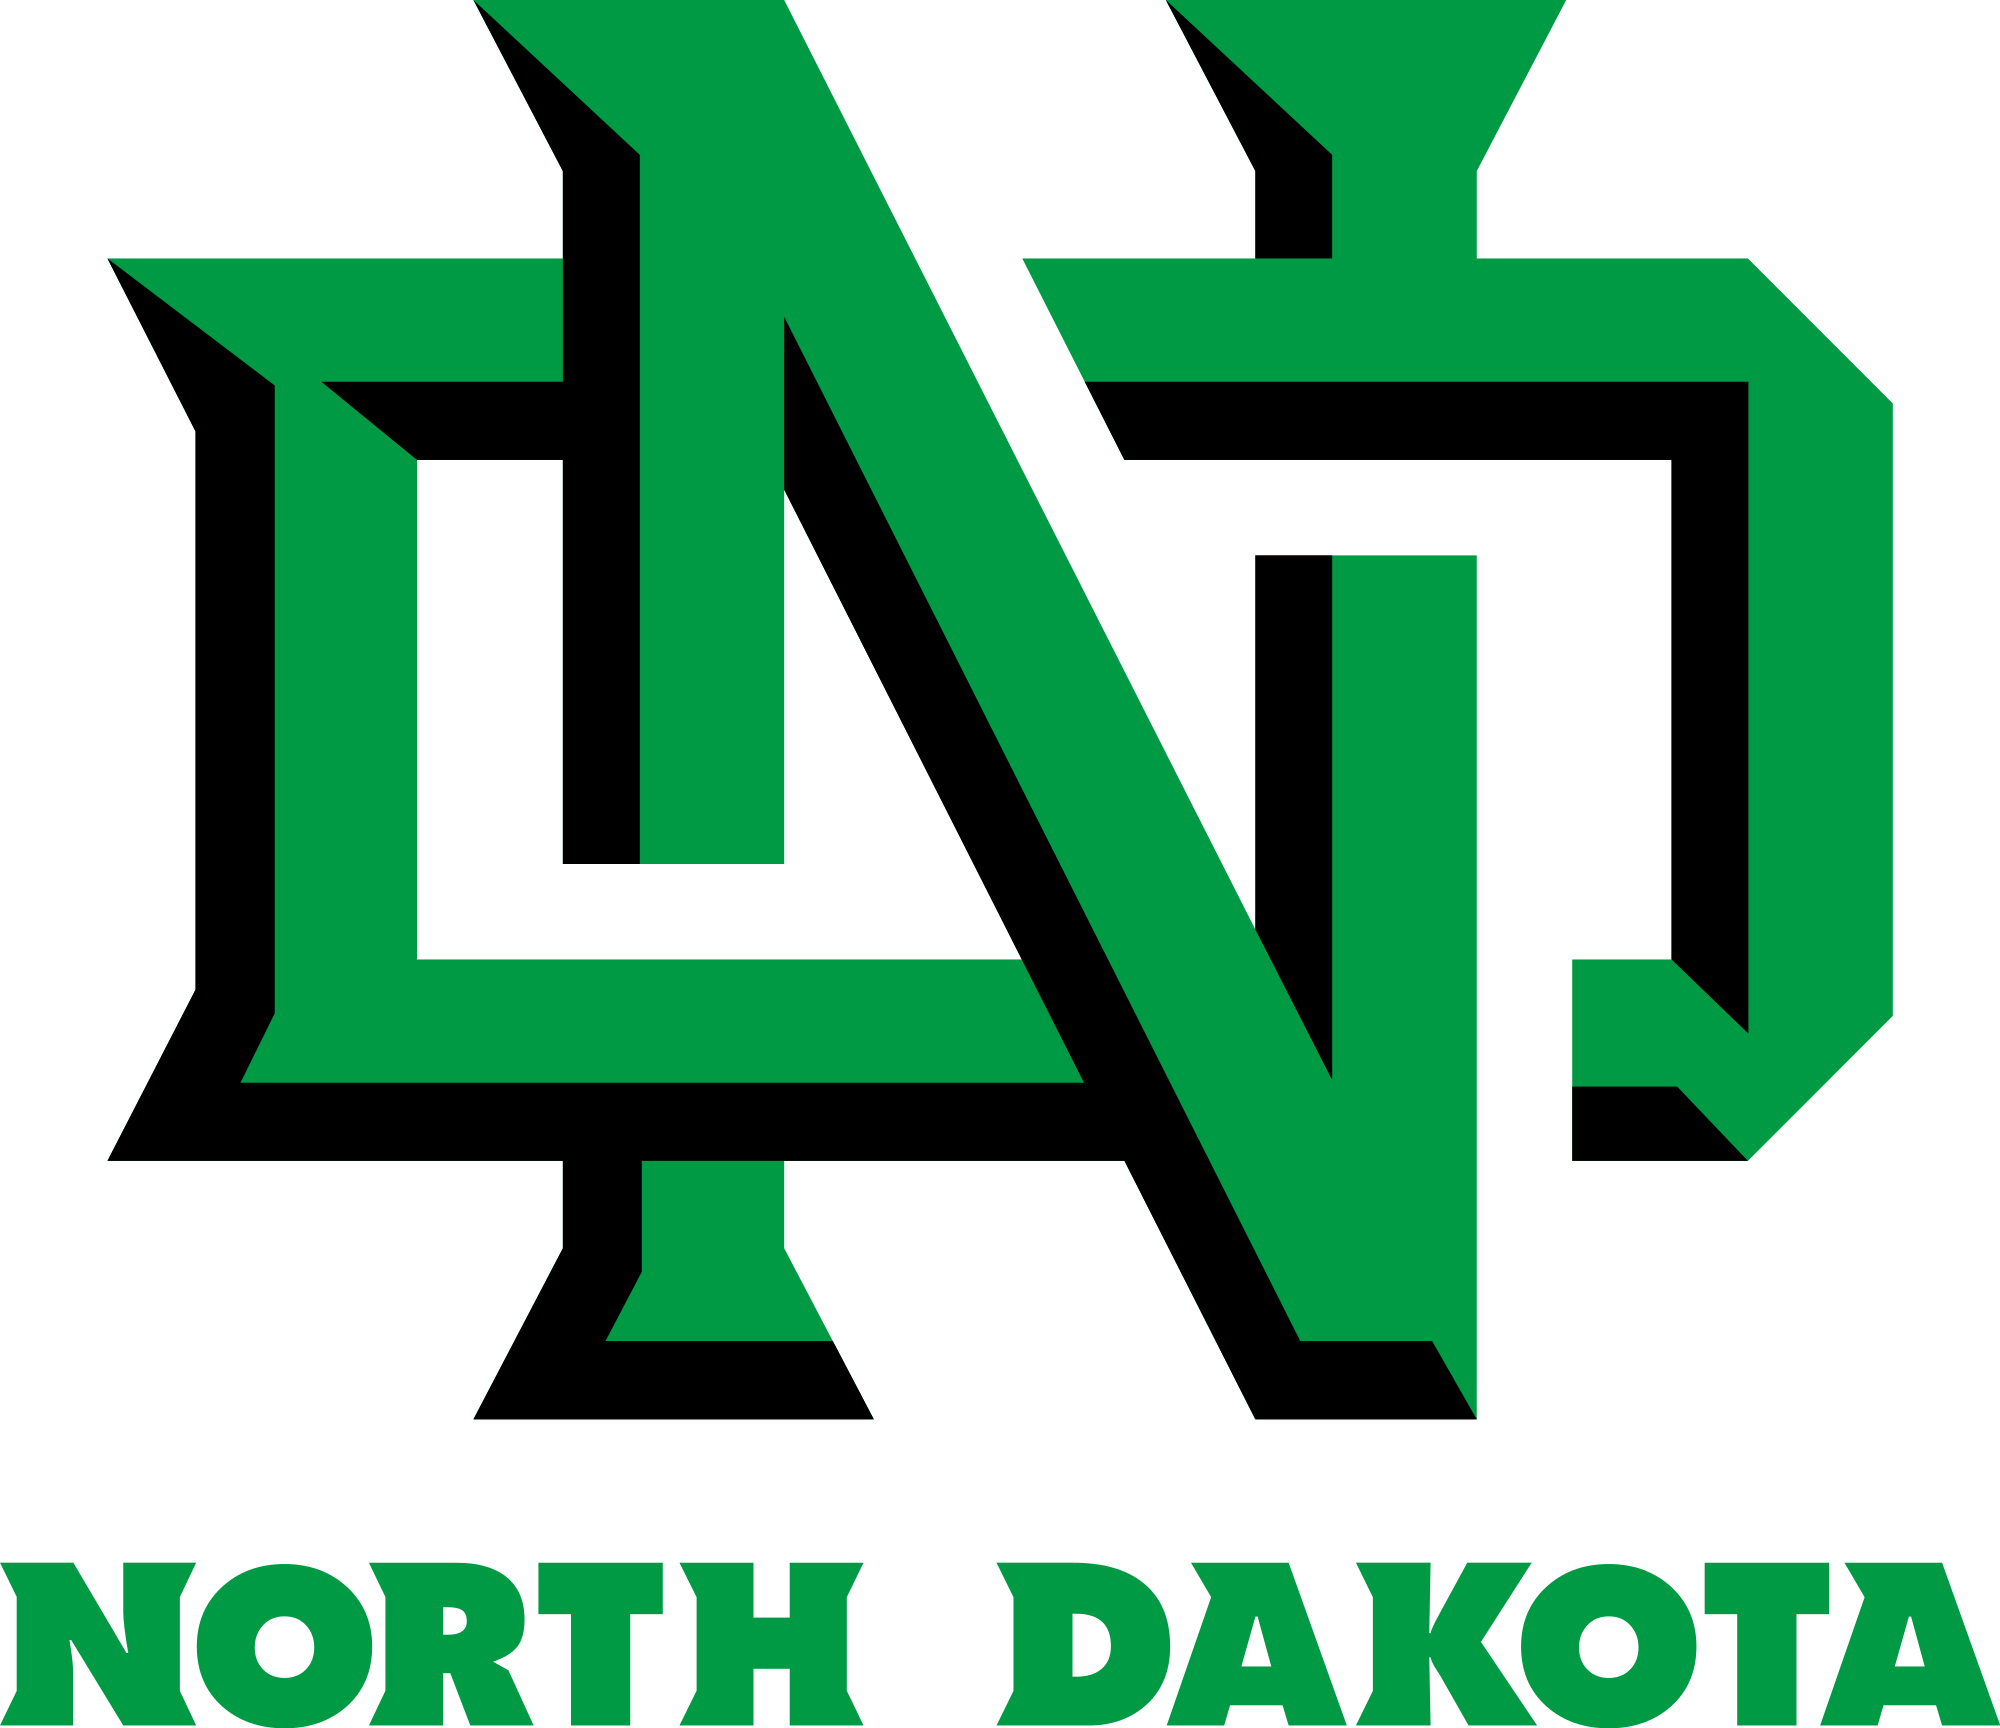 2017 March Madness - University Of North Dakota Hockey Logo (2000x1728)